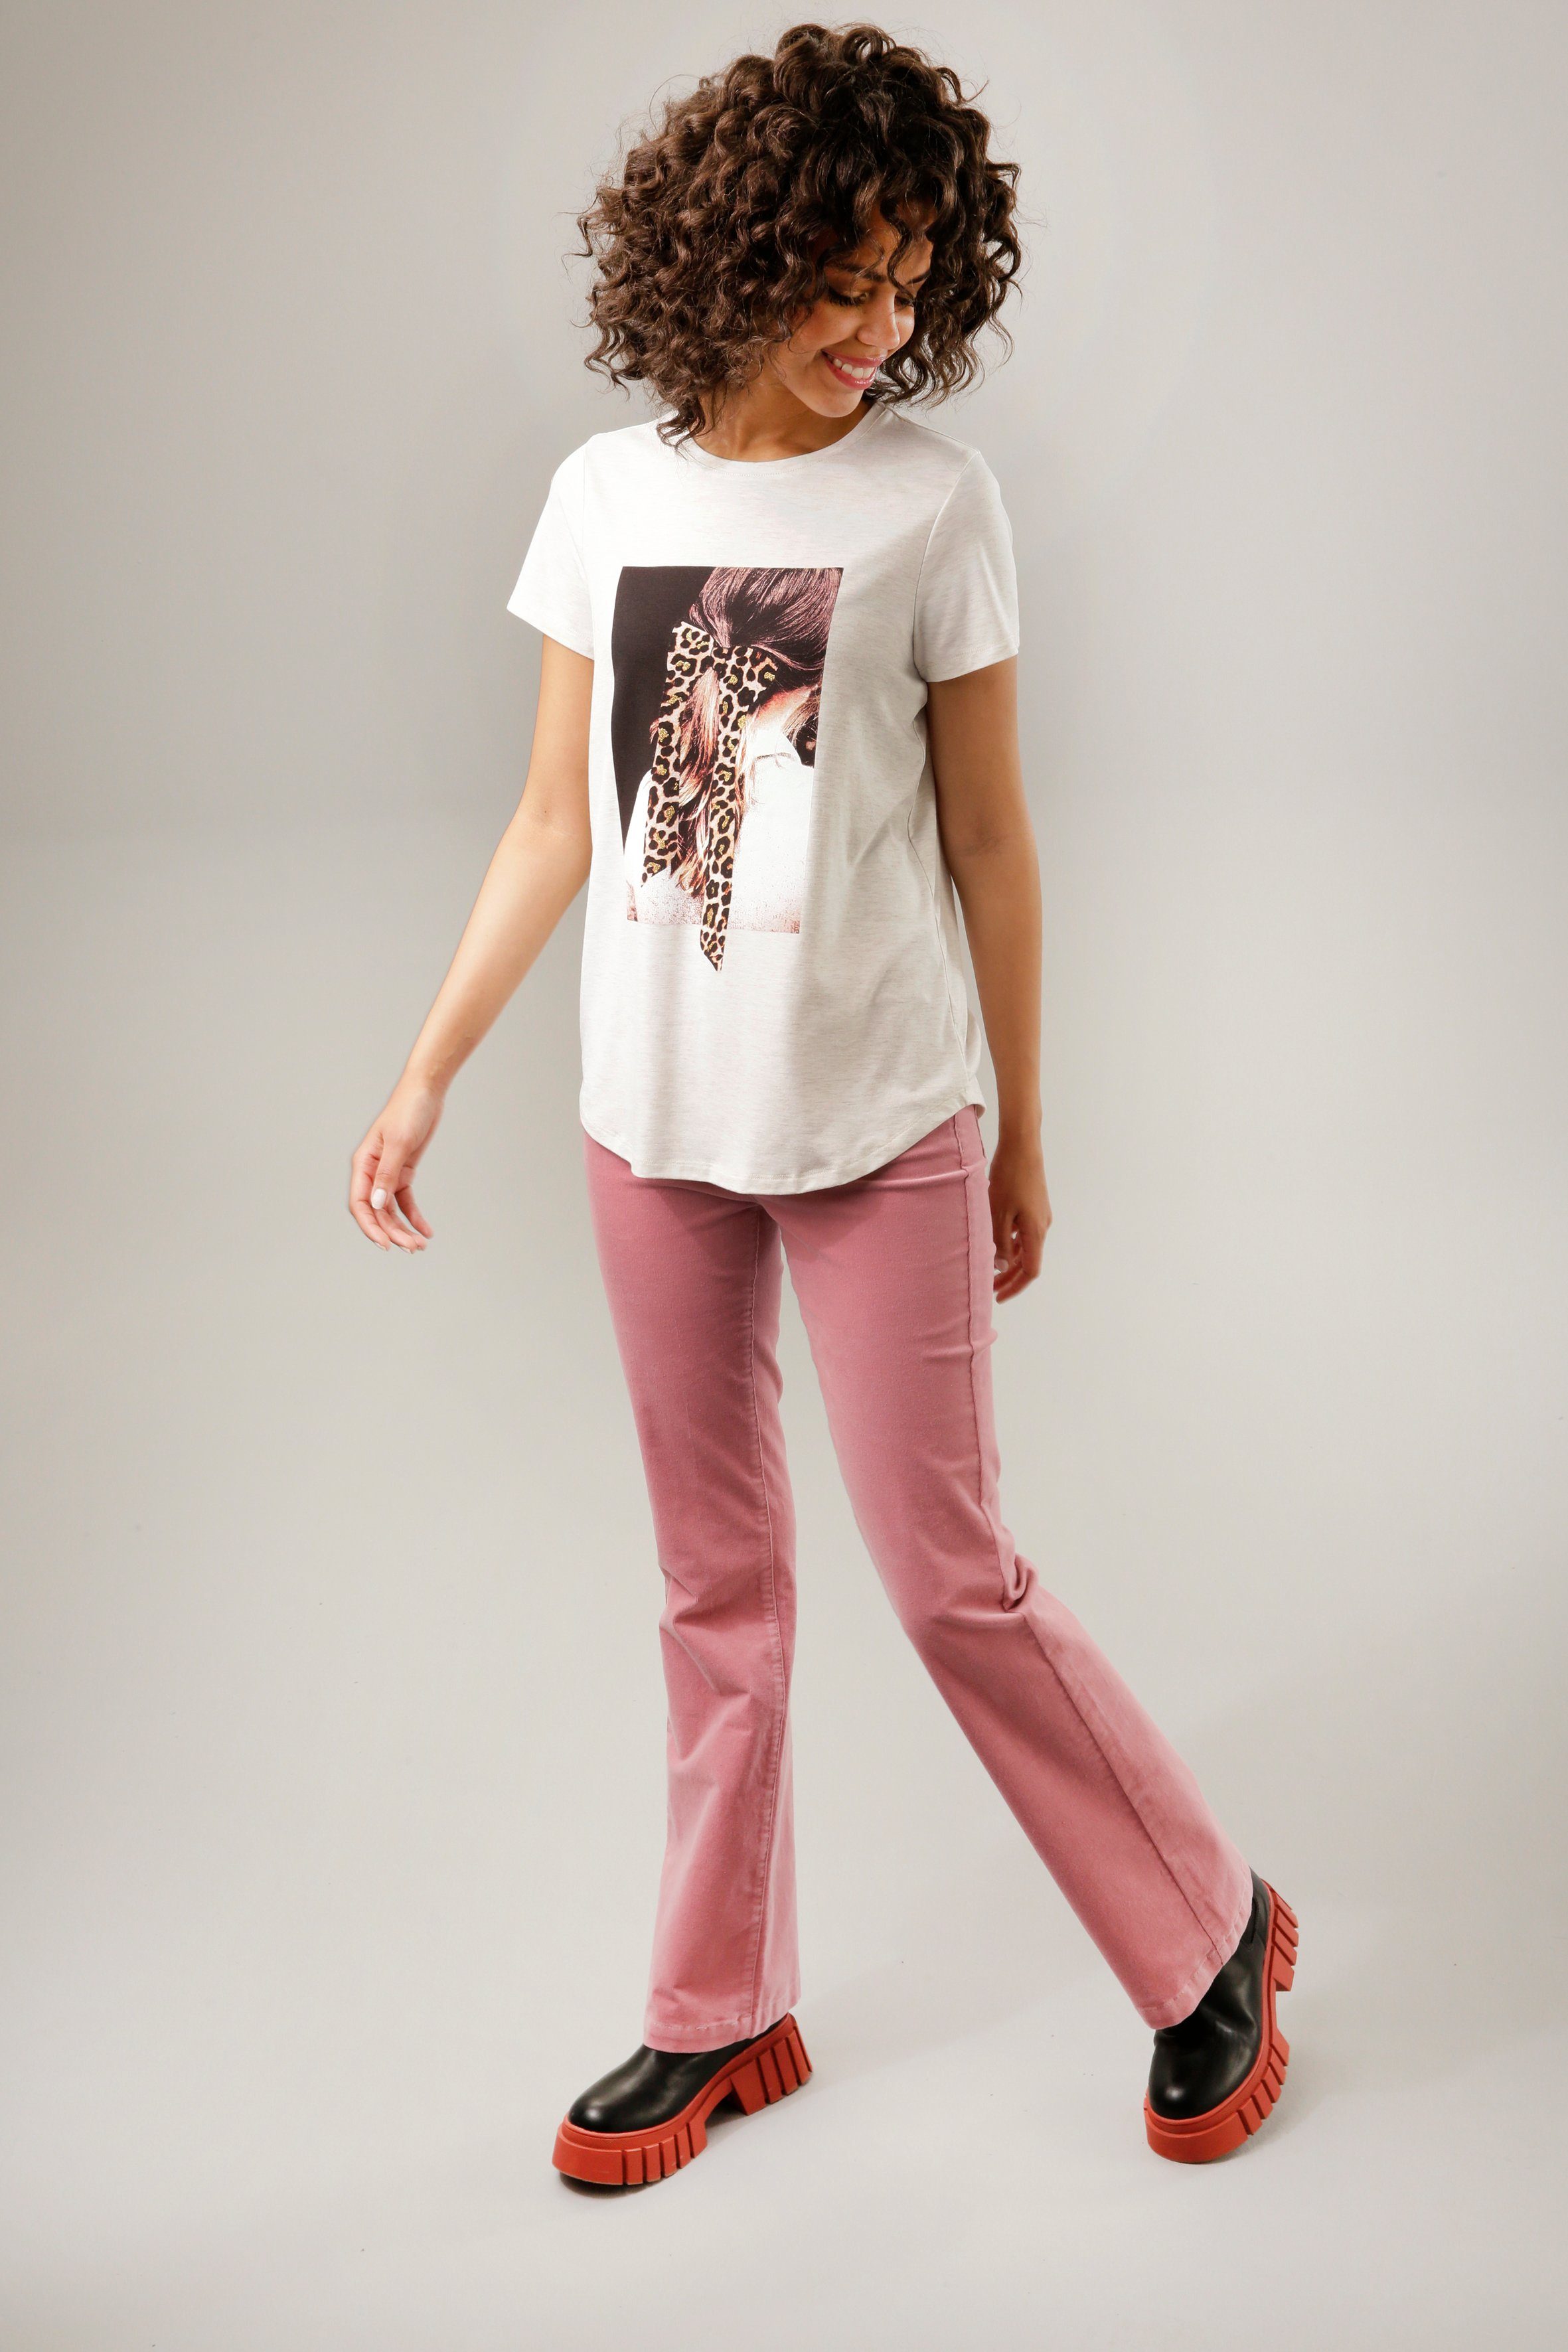 CASUAL Glitzer Frontdruck mit Aniston natur-dunkelbraun-weiß-rosa-goldfarben T-Shirt verziertem